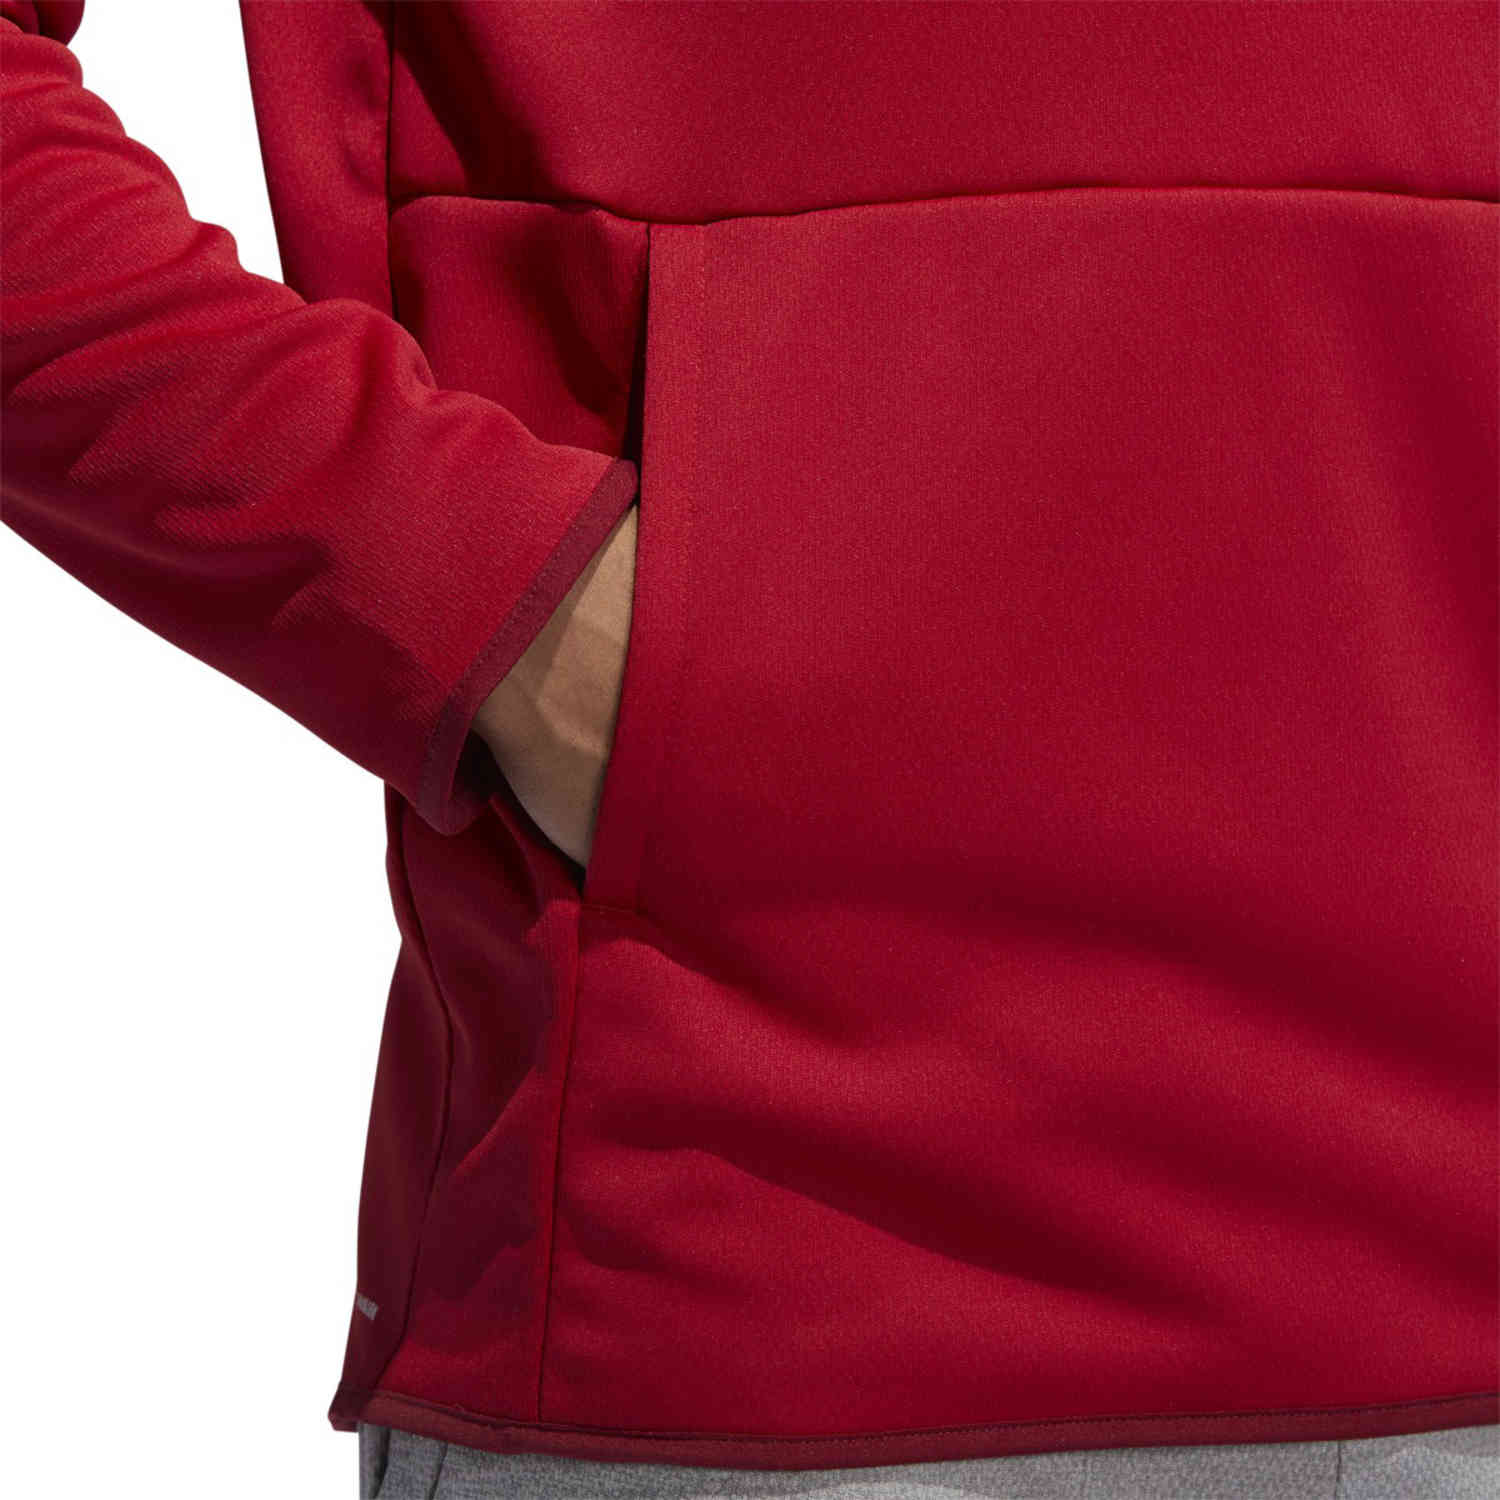 adidas men's team issue badge of sport hoodie